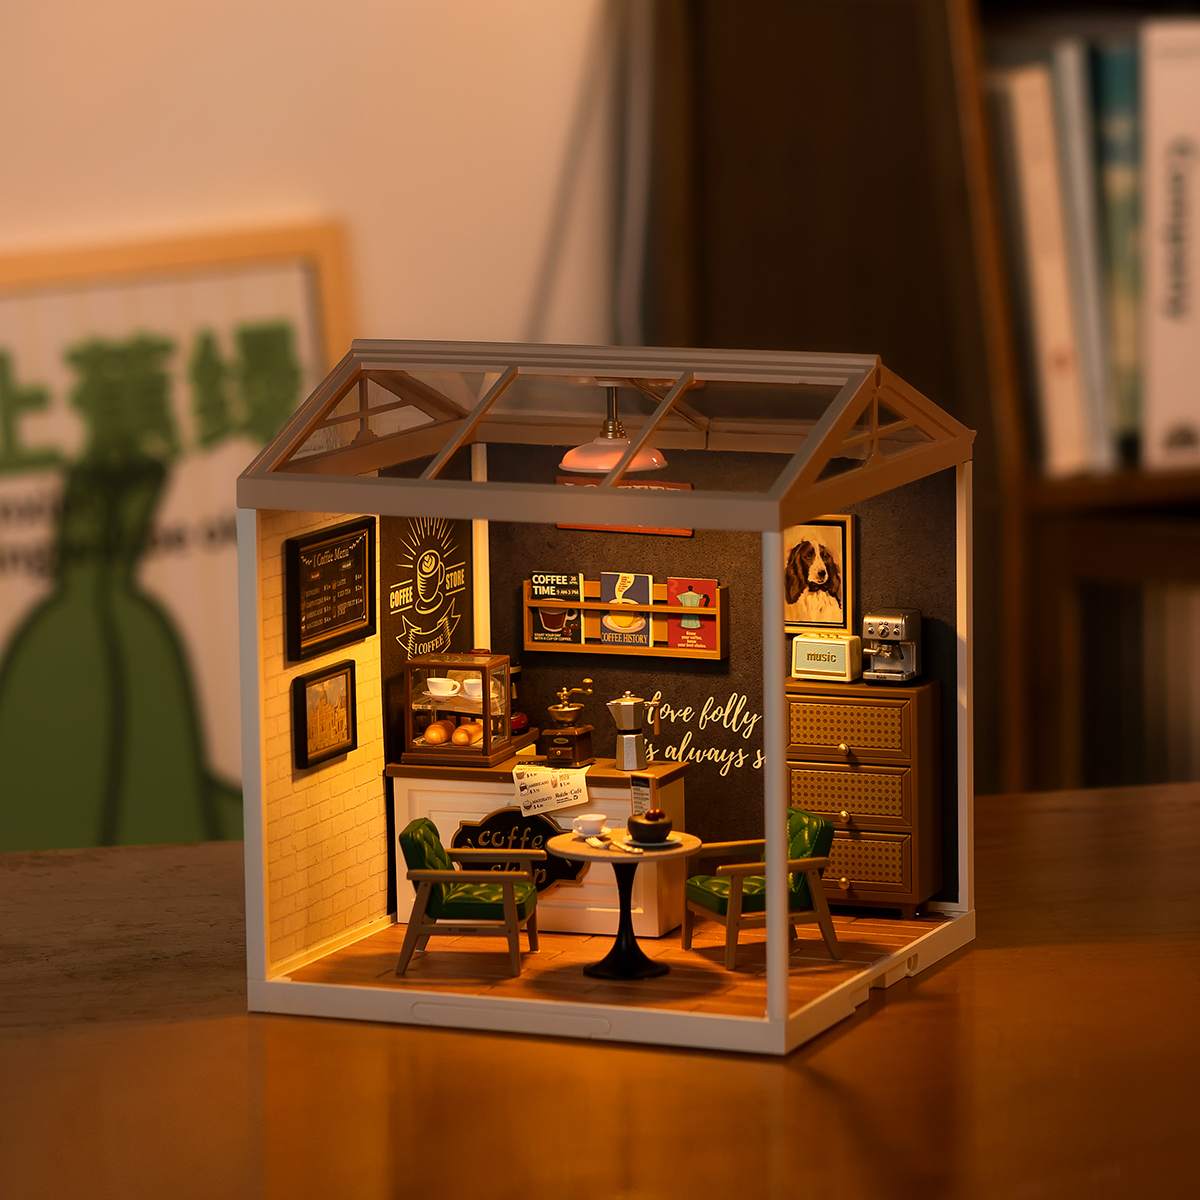 Rolife DIY Miniature House - Flavory Café DG162